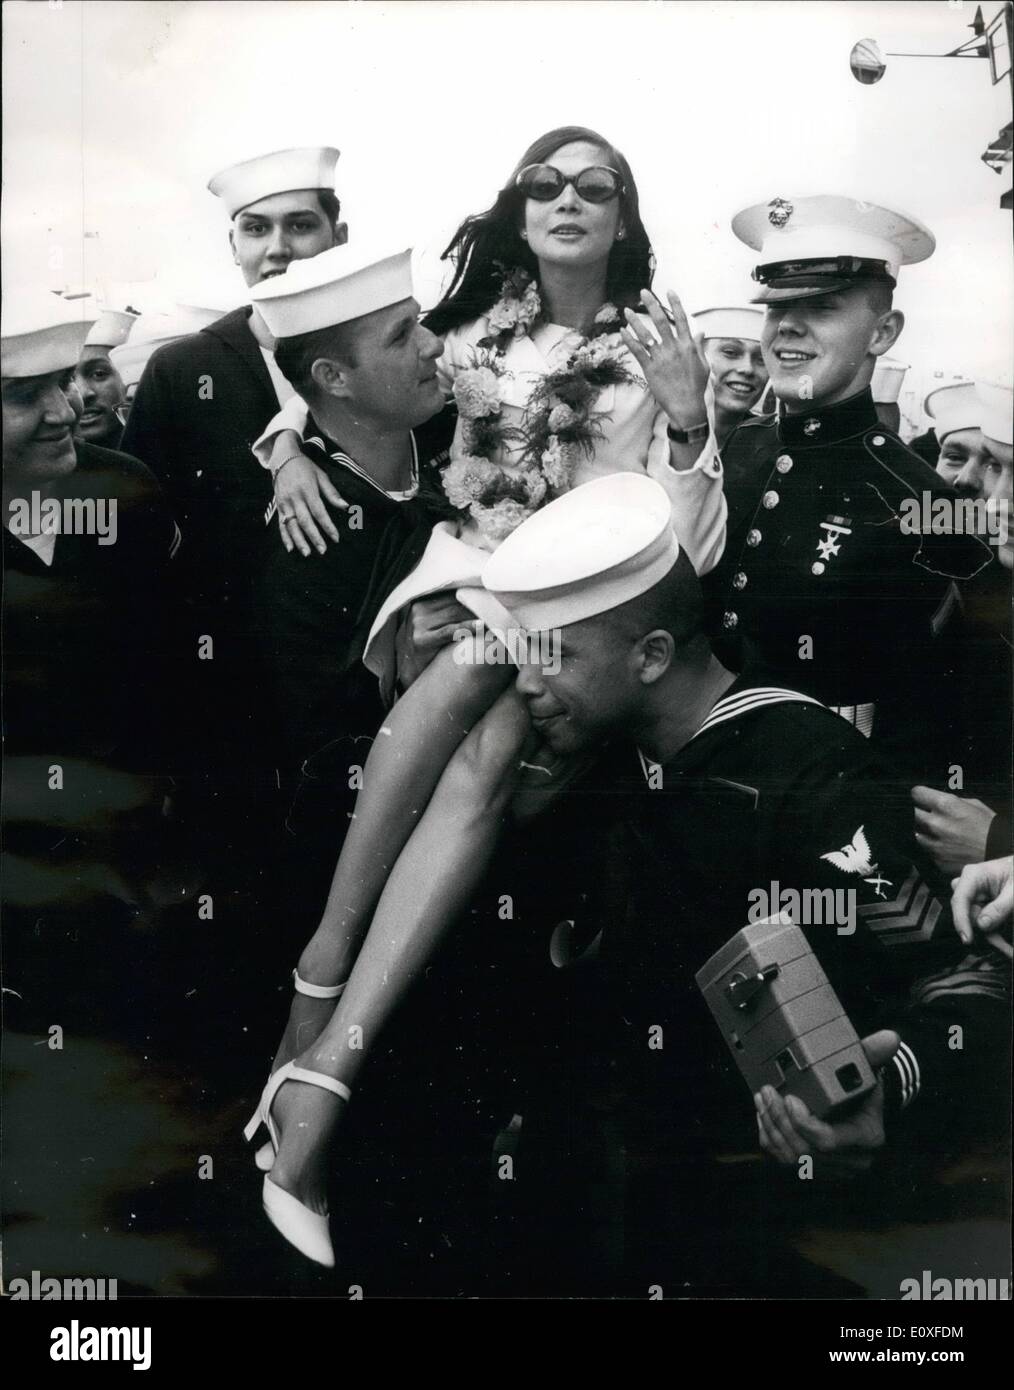 Agosto 08, 1966 - Nancy Kwan nave è la mascotte: giù a sud del molo ferroviaria in Portsmouth ieri, ieri, 2.800 marinai americani erano sul dovere intrattenere il loro nuovo 'mascot', attrice Nancy Kwan. A bordo della USS Randolph, vi è stata una banda di Hawaiian giocando a pieno di vapore e di erba - costeggiava le ragazze. E vi erano ghirlande di rosa e oro crisantemi, acquistati per 30s. ciascuna da un fiorista locale per gli ospiti. Miss Kwan è riuscito a firmare un, ing-dimensioni immagine di se stessa, accettare una targa e un inciso più leggero e ringraziare il personale per rendere la sua la loro mascotte Foto Stock